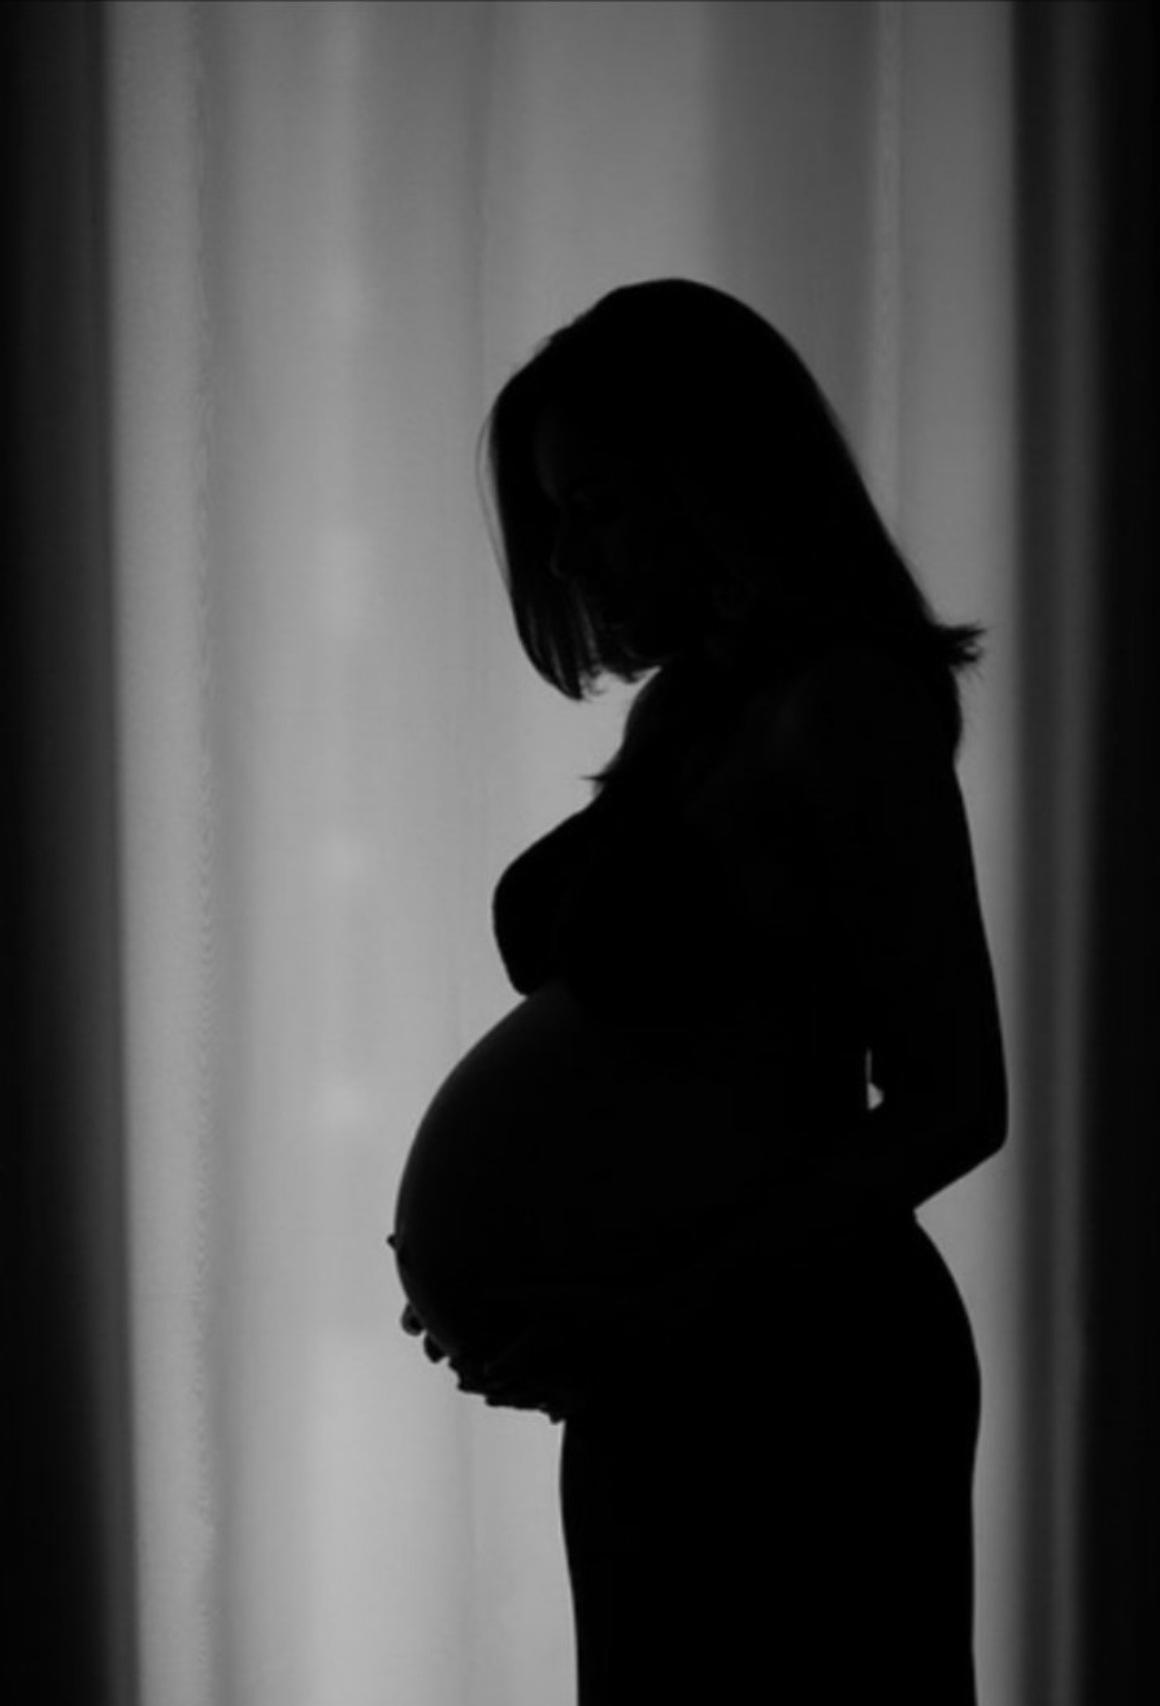 Το πείραμα με πειραματόζωα έγκυες γυναίκες που κατανάλωσαν ραδιενεργά υγρά χωρίς να το γνωρίζουν με αποτέλεσμα τερατογενέσεις και νεκρά παιδιά 